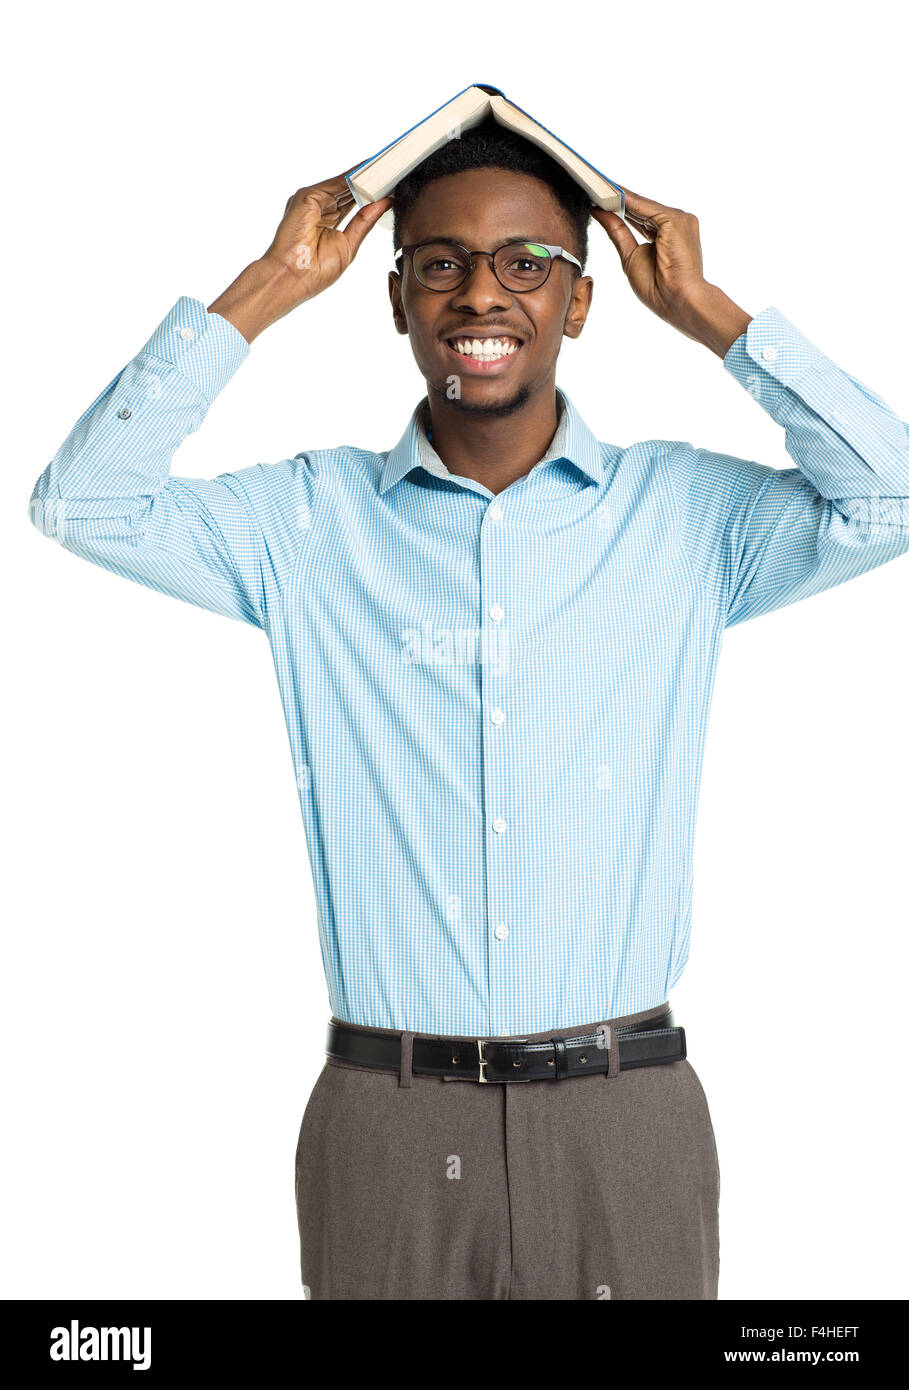 Happy african american college student with livre sur sa tête debout sur fond blanc Banque D'Images